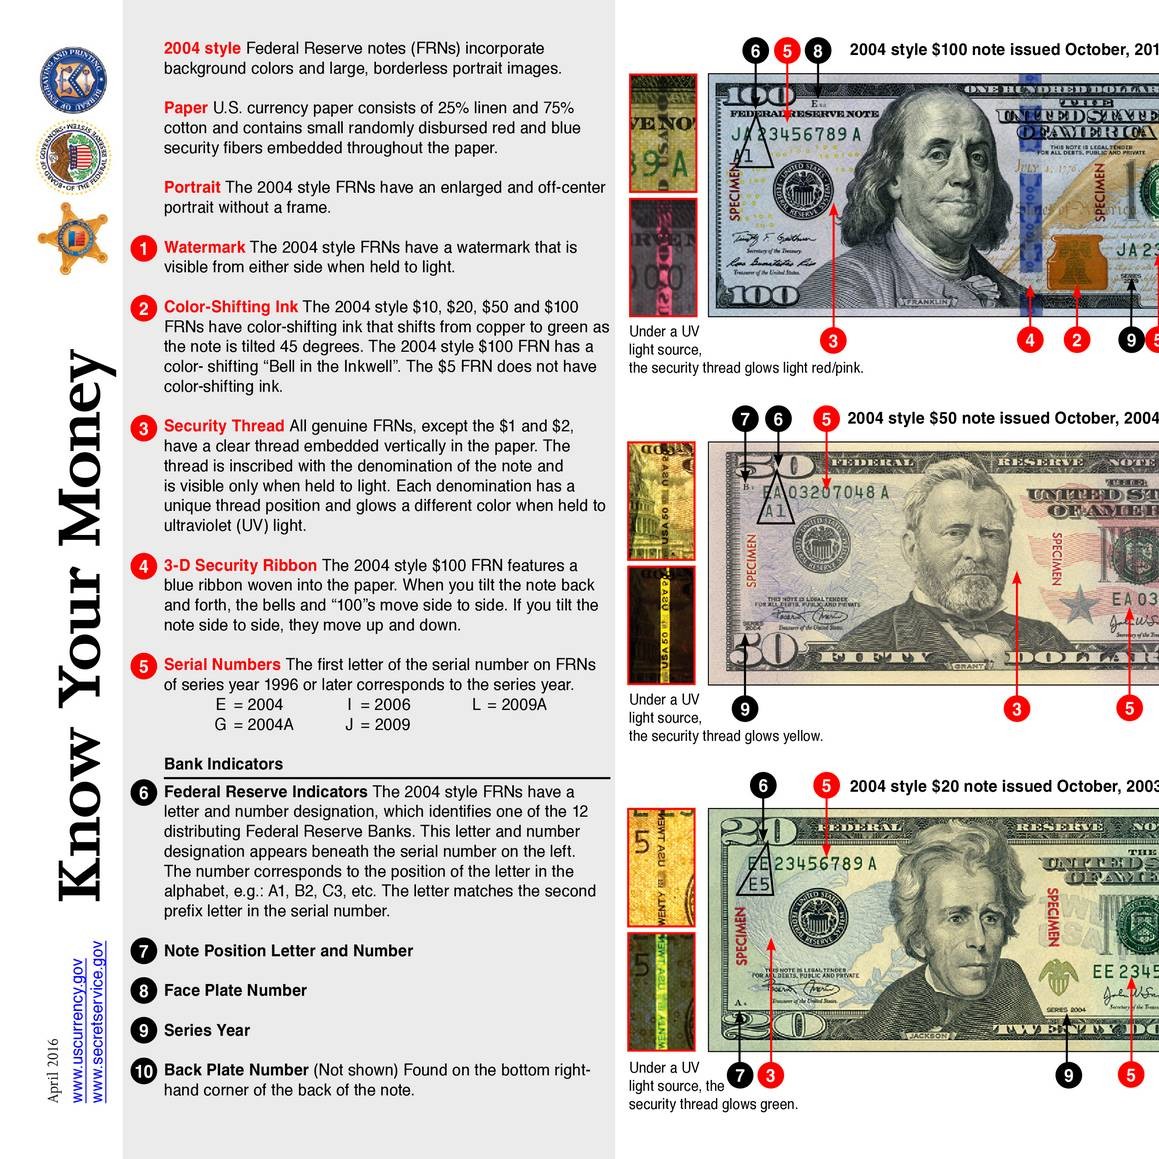 Secret Service - Know Your Money Document - 05.04.17.pdf | DocDroid